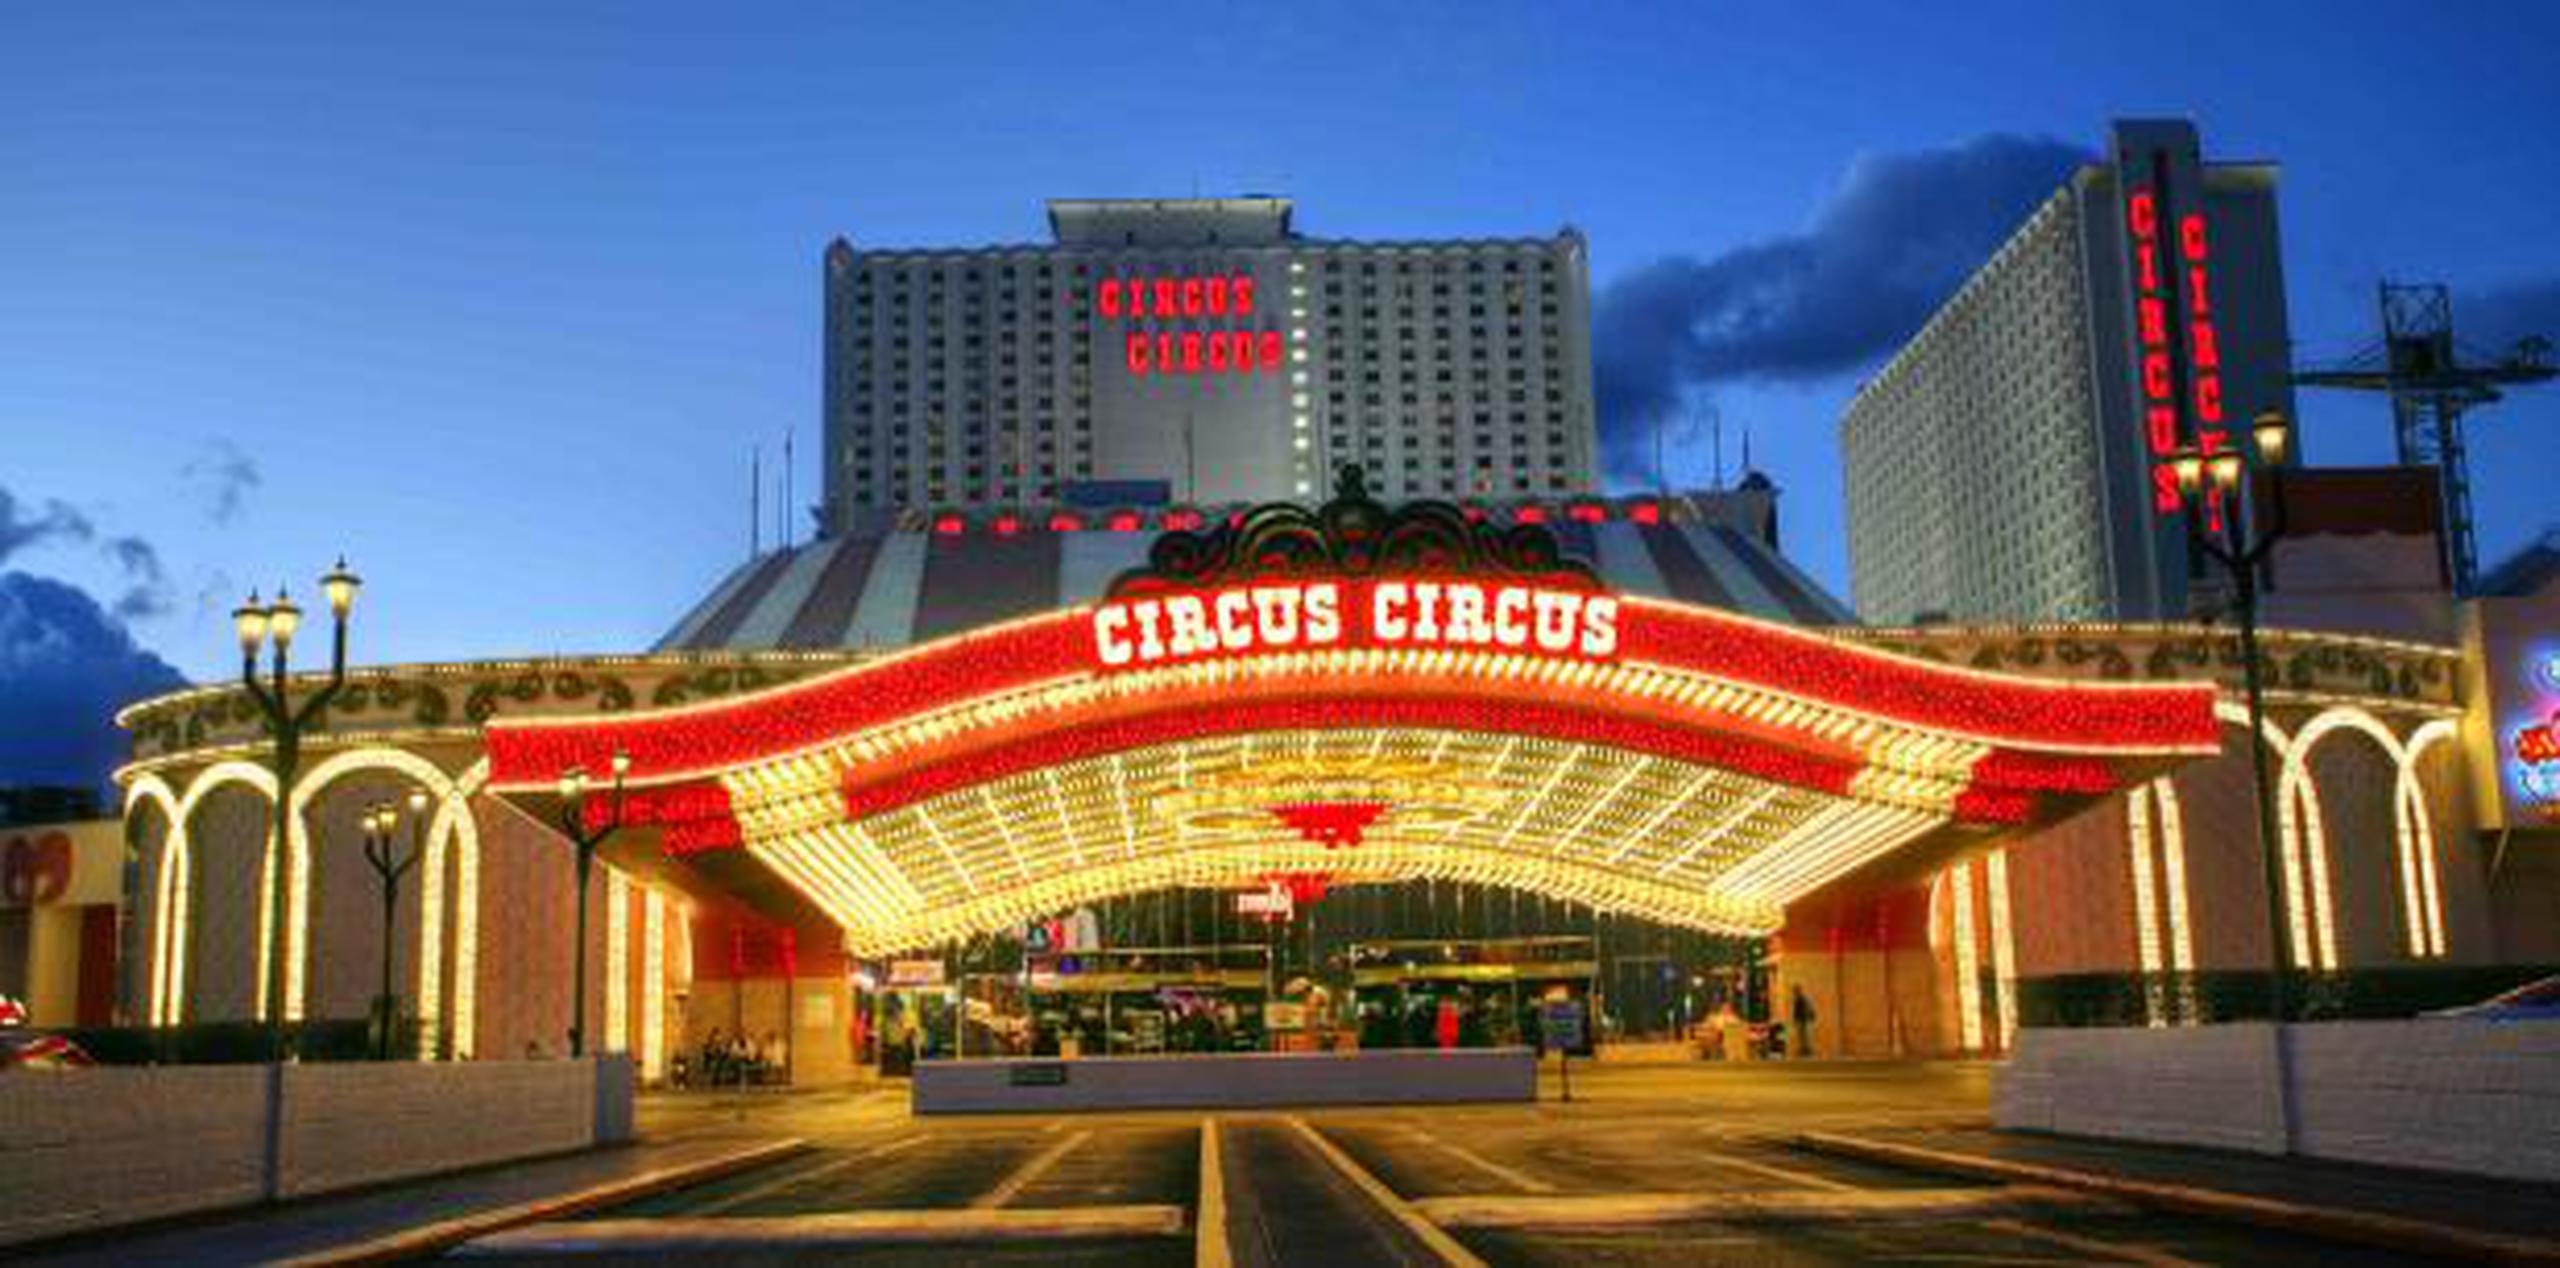 El hotel Circus Circus se ubica en la zona "The Strip" de Las Vegas. (Shutterstock)